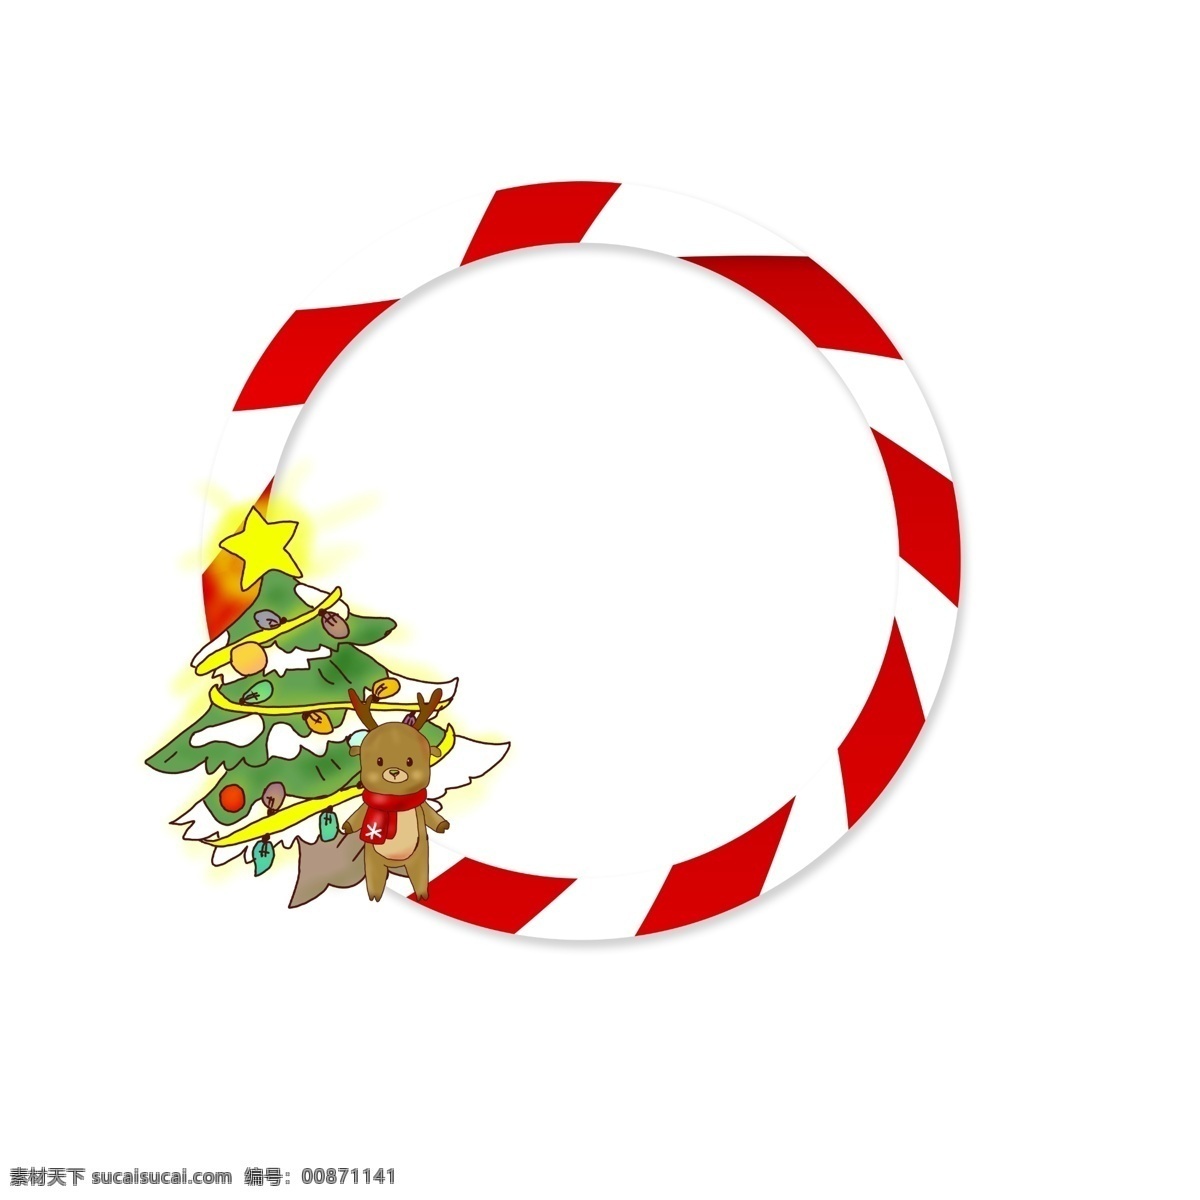 圣诞节 手绘 边框 圣诞树 麋鹿 礼物 圣诞边框 圣诞 可爱 矢量 简单 手绘边框 小麋鹿 红色